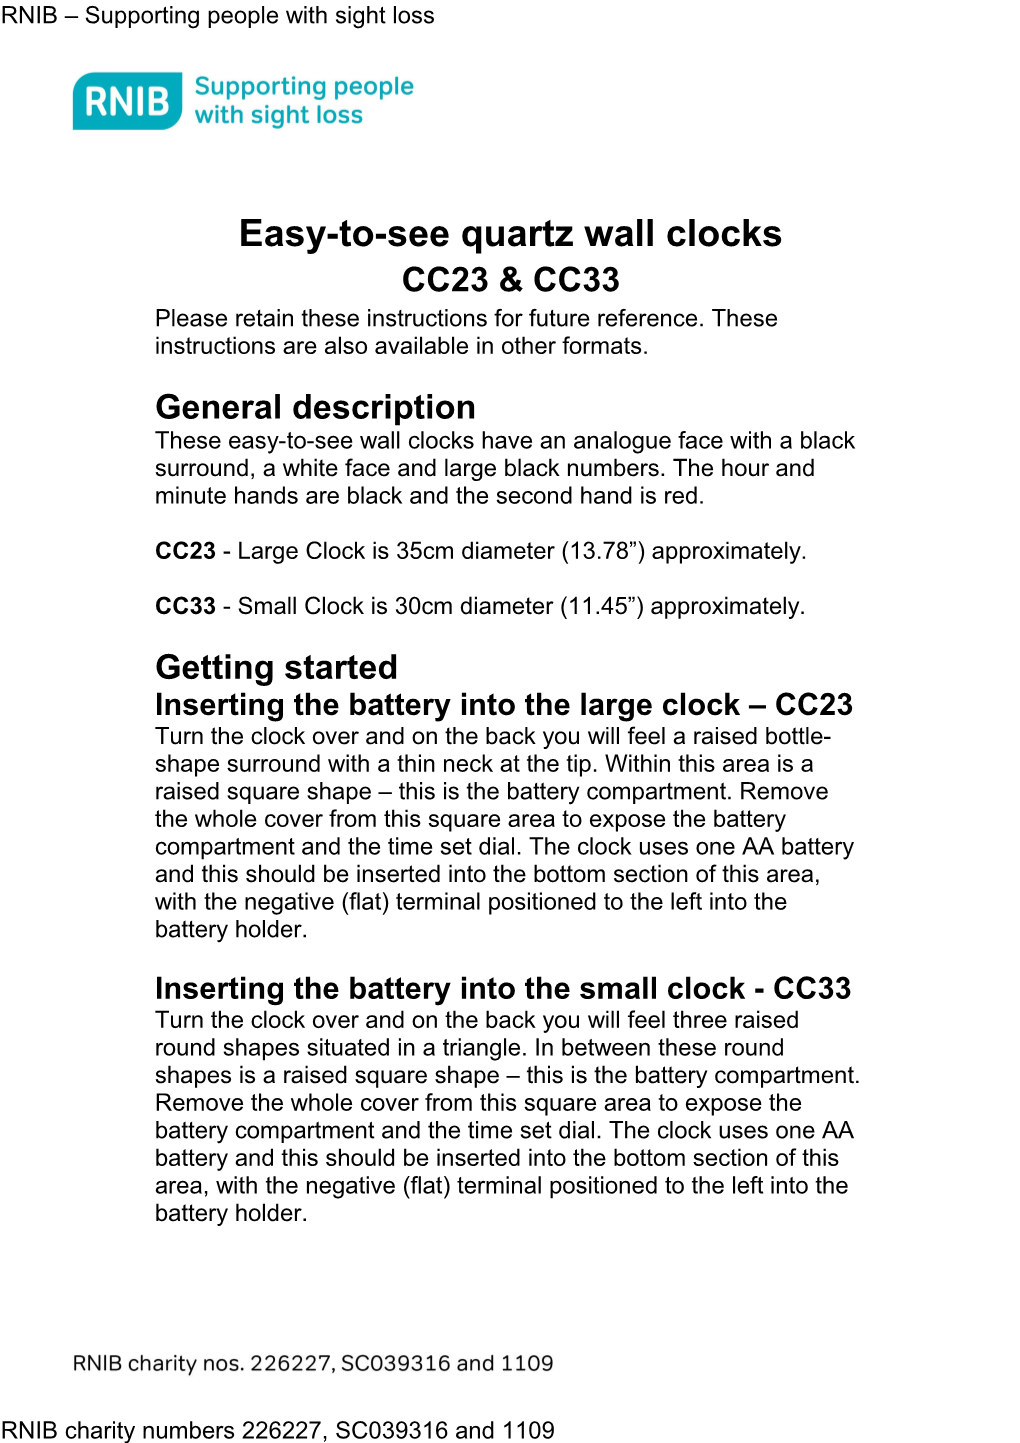 Easy-To-See Quartz Wall Clocks